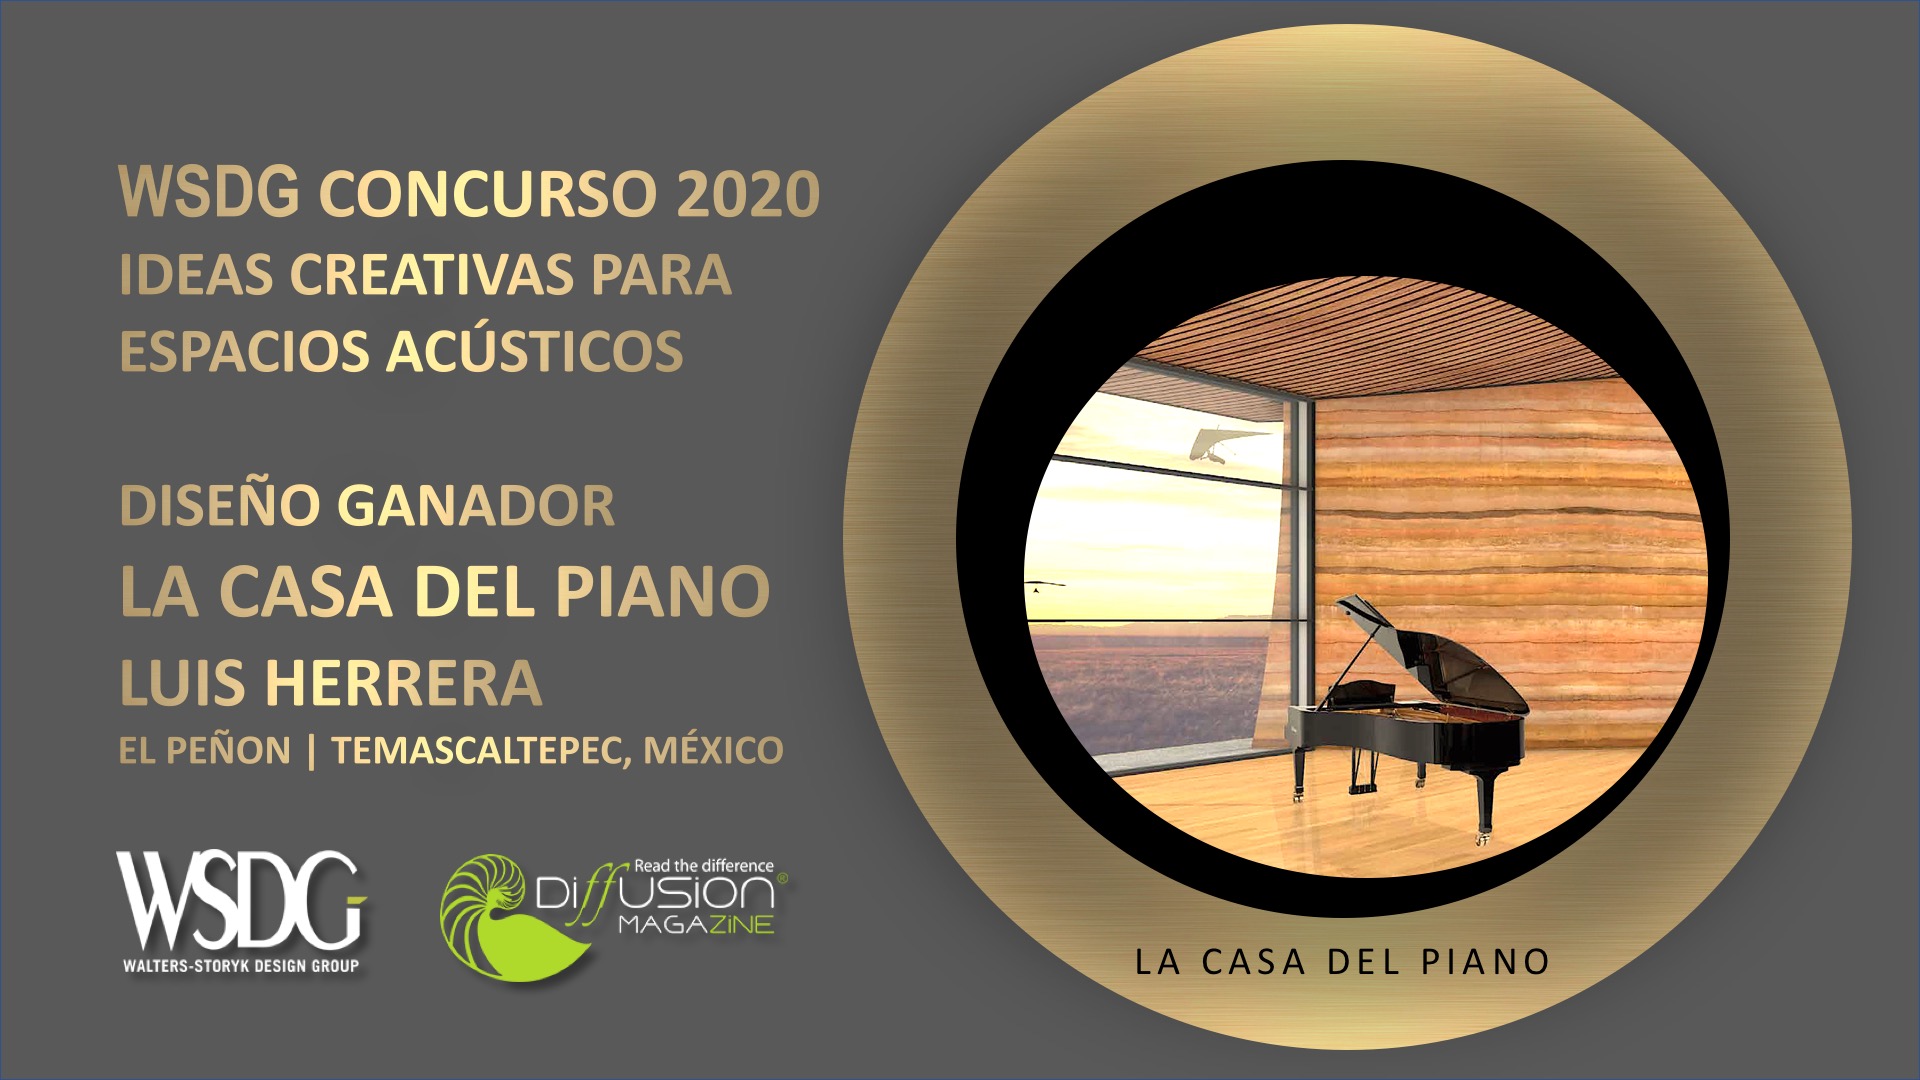 WSDG Concurso Creativos de Espacios Acusticos 2020, Ganador La Casa del Piano. Winner.